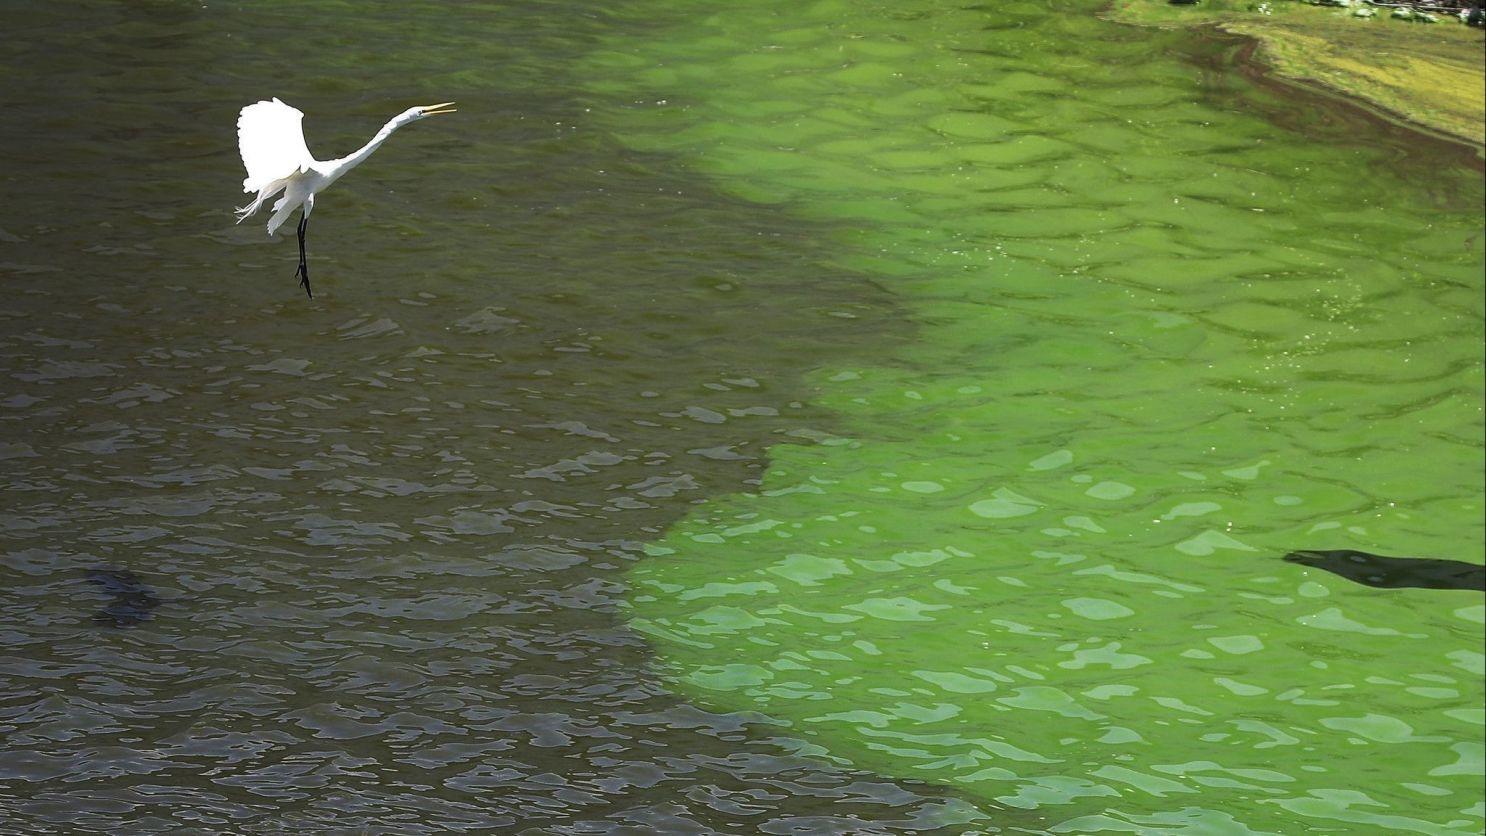 Heron and algae bloom